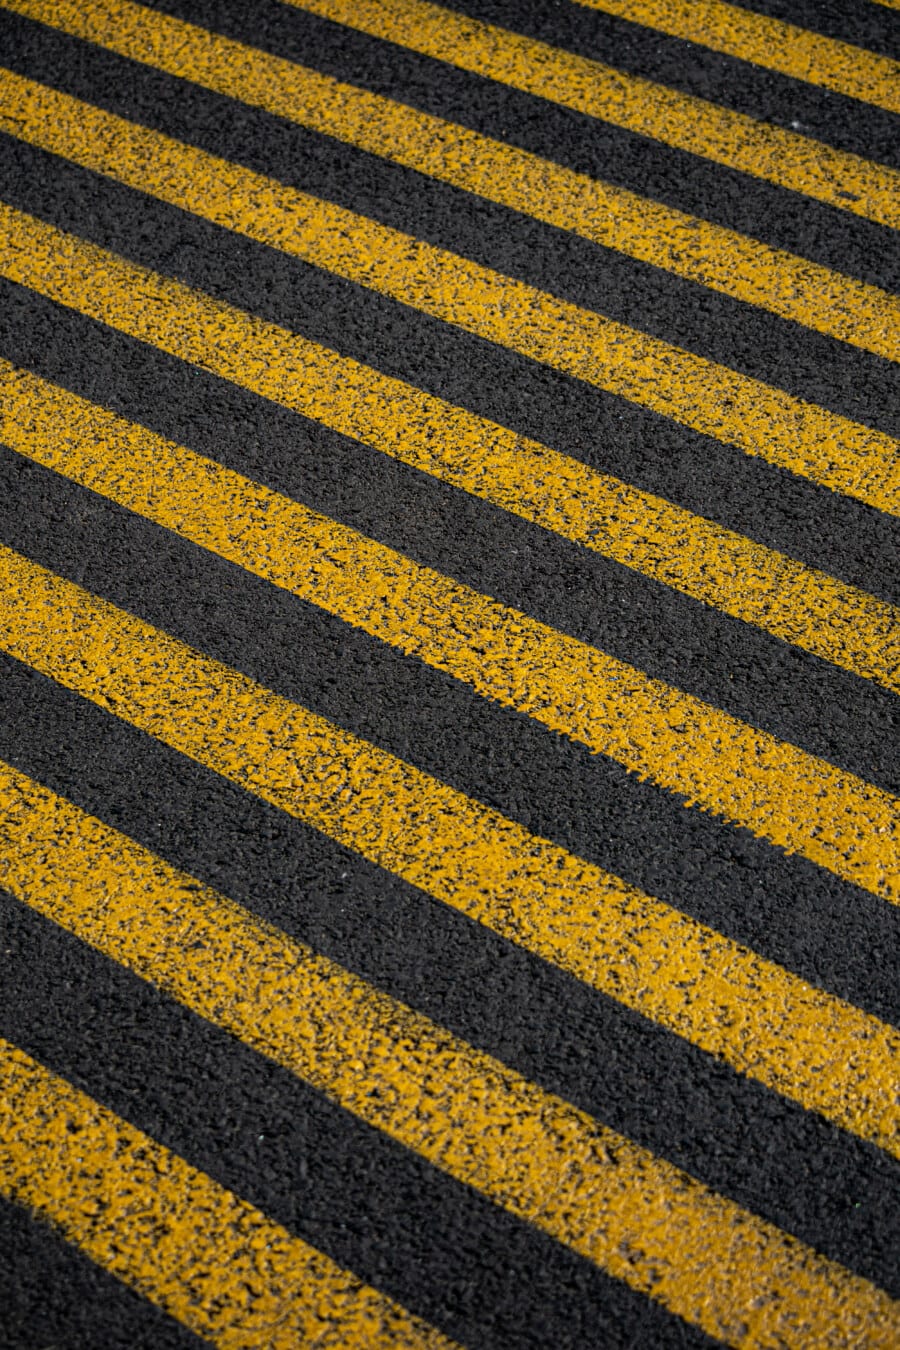 asfalt, bitumena, beton, žuta, pruge, tekstura, linija, uzorak, ravno, kolnik